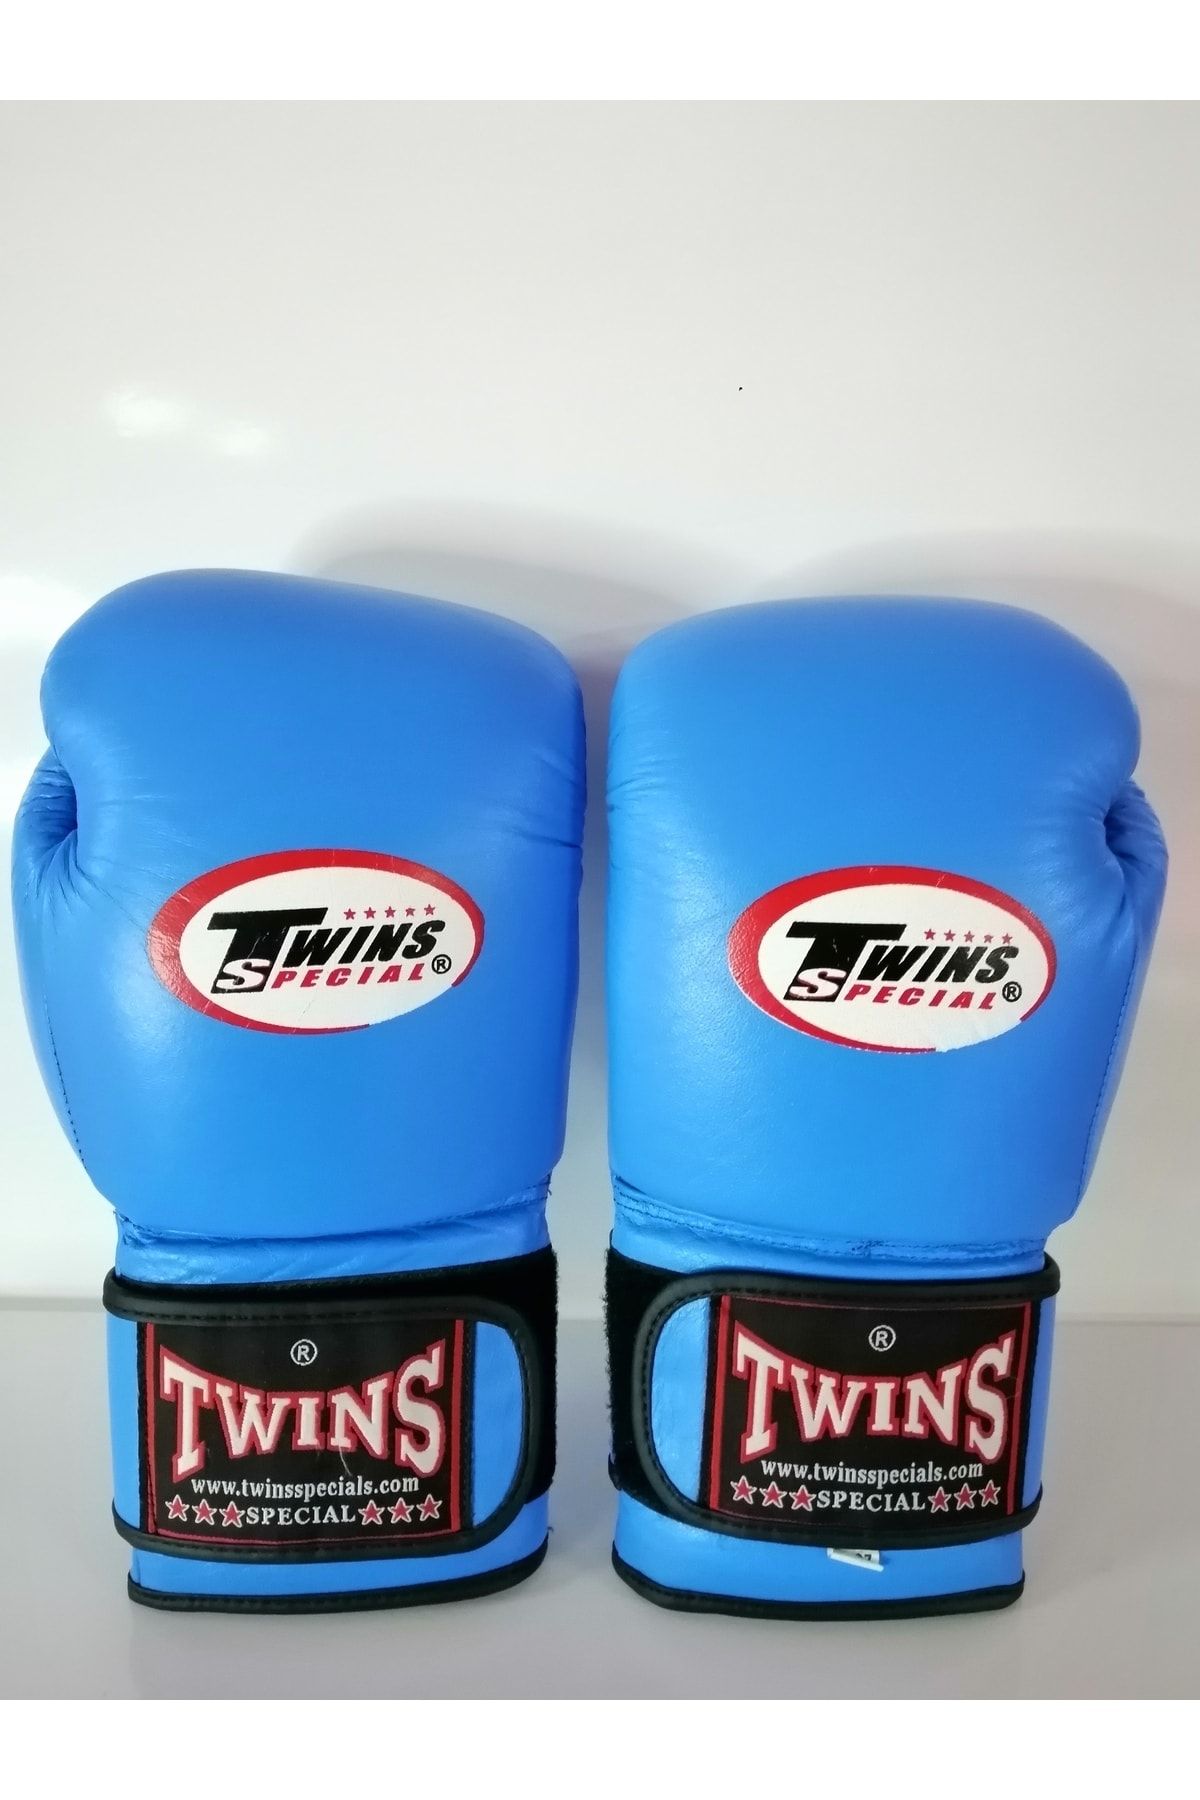 MODA TWİNS Twins Marka Deri Boks Eldiveni Açık Mavi Renk Cırtlı Model